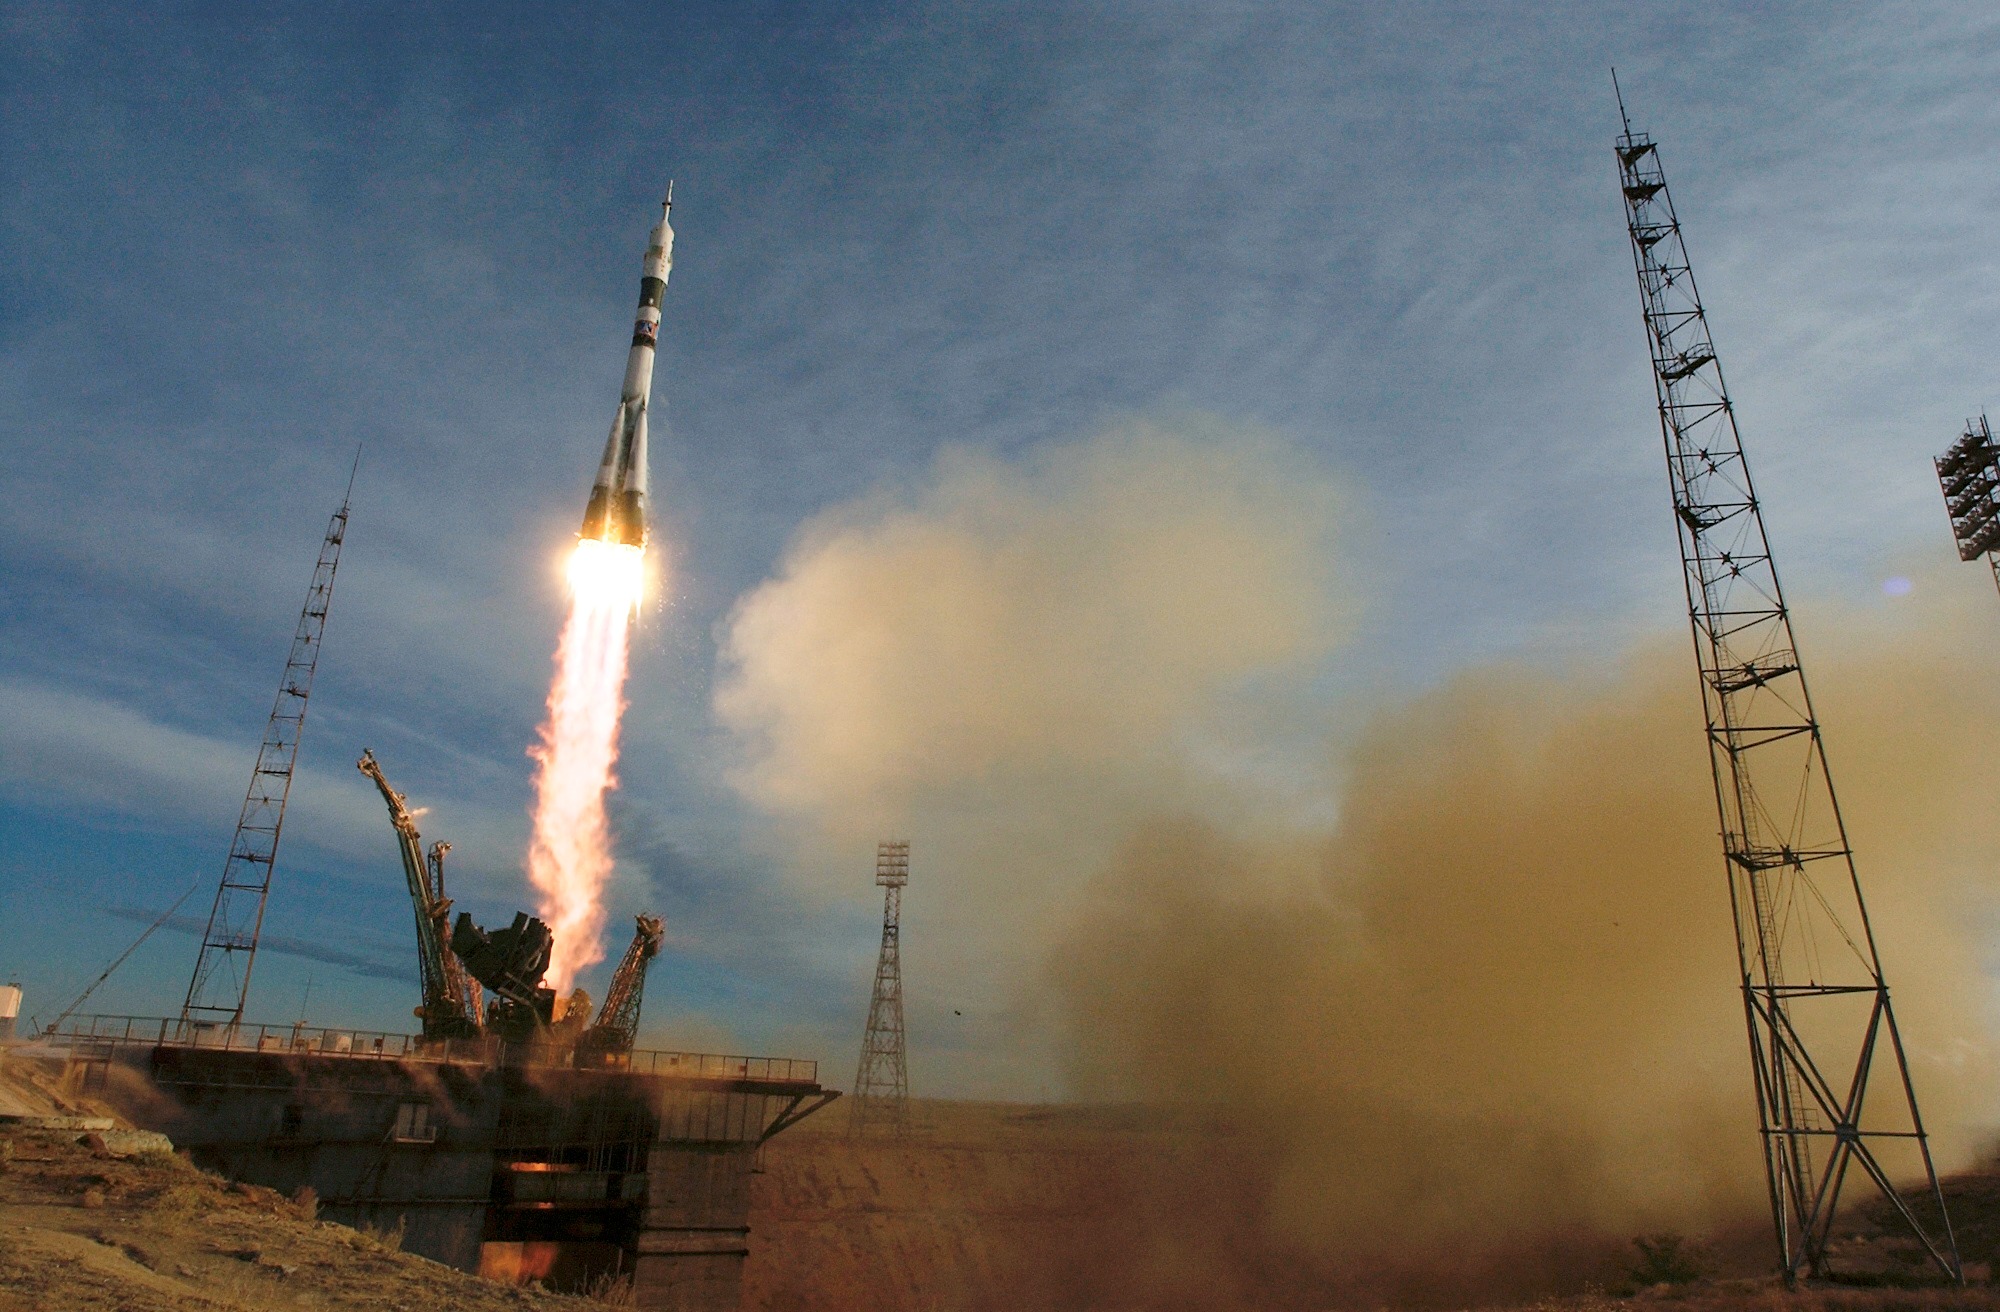 The Soyuz TMA-5 spacecraft blasts off